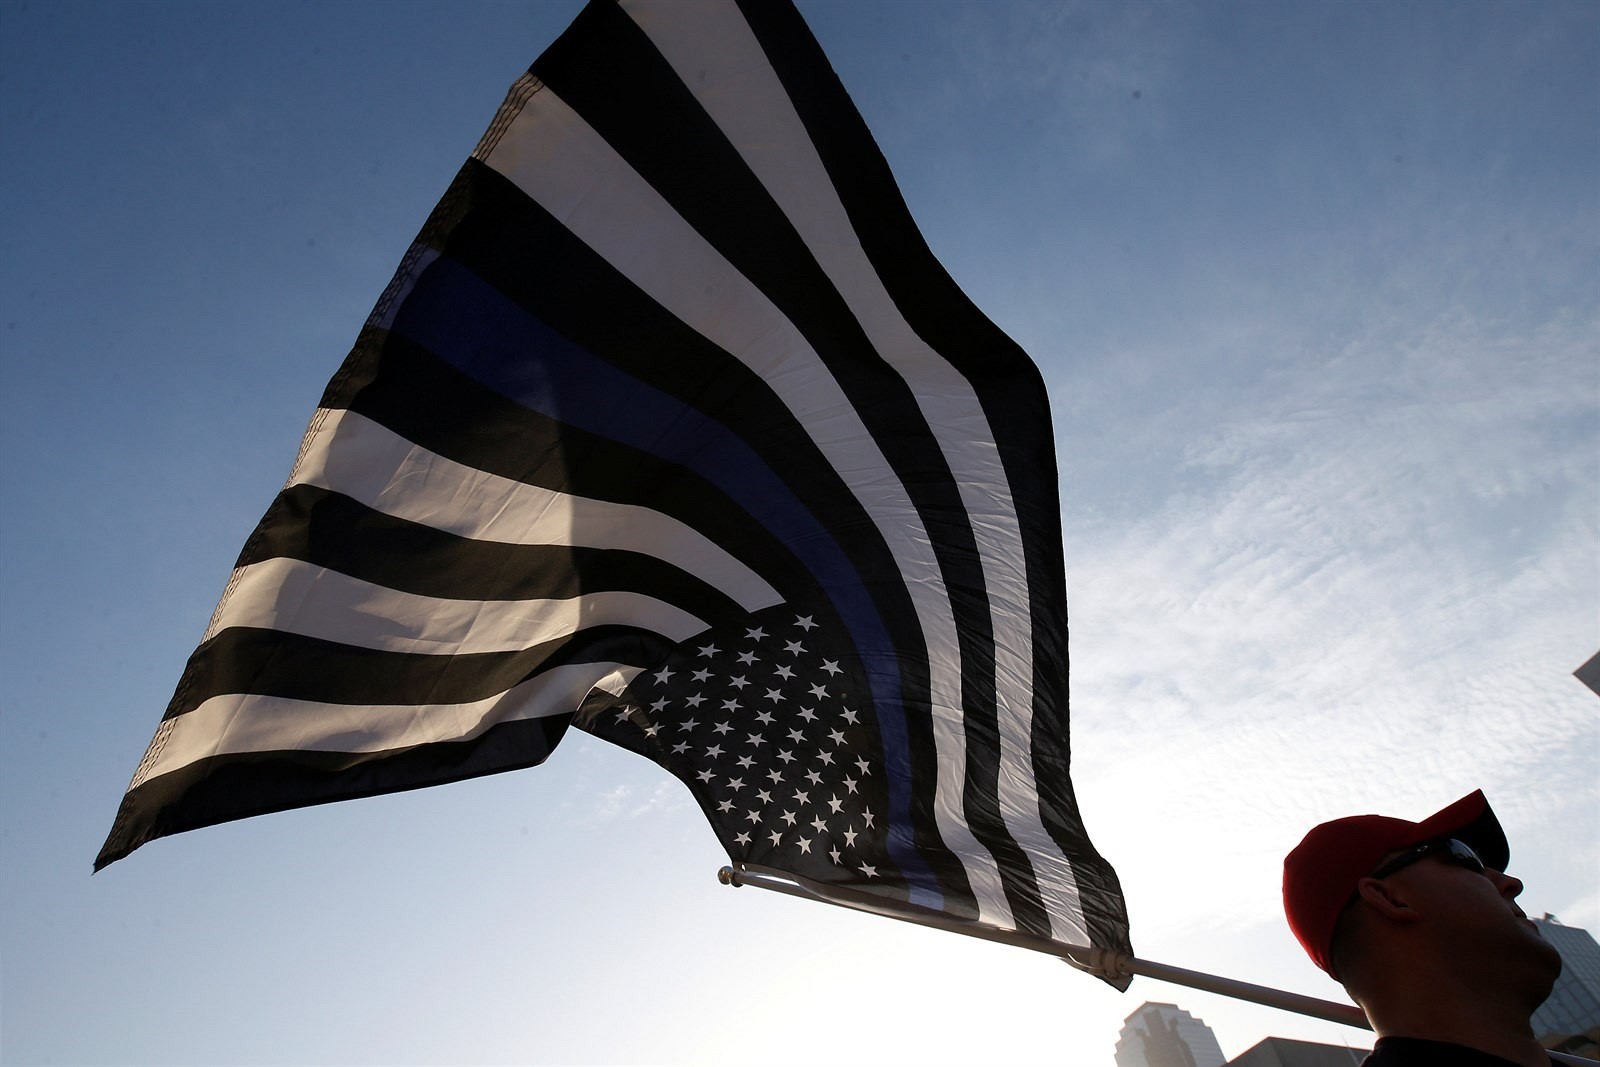 Na spomienkovom obrade v Dallase sa objavila takáto čiernobiela americká vlajka s modrým pruhom. Ten symbolizuje políciu, ktorá stojí medzi spoločnosťou a zločincami. 